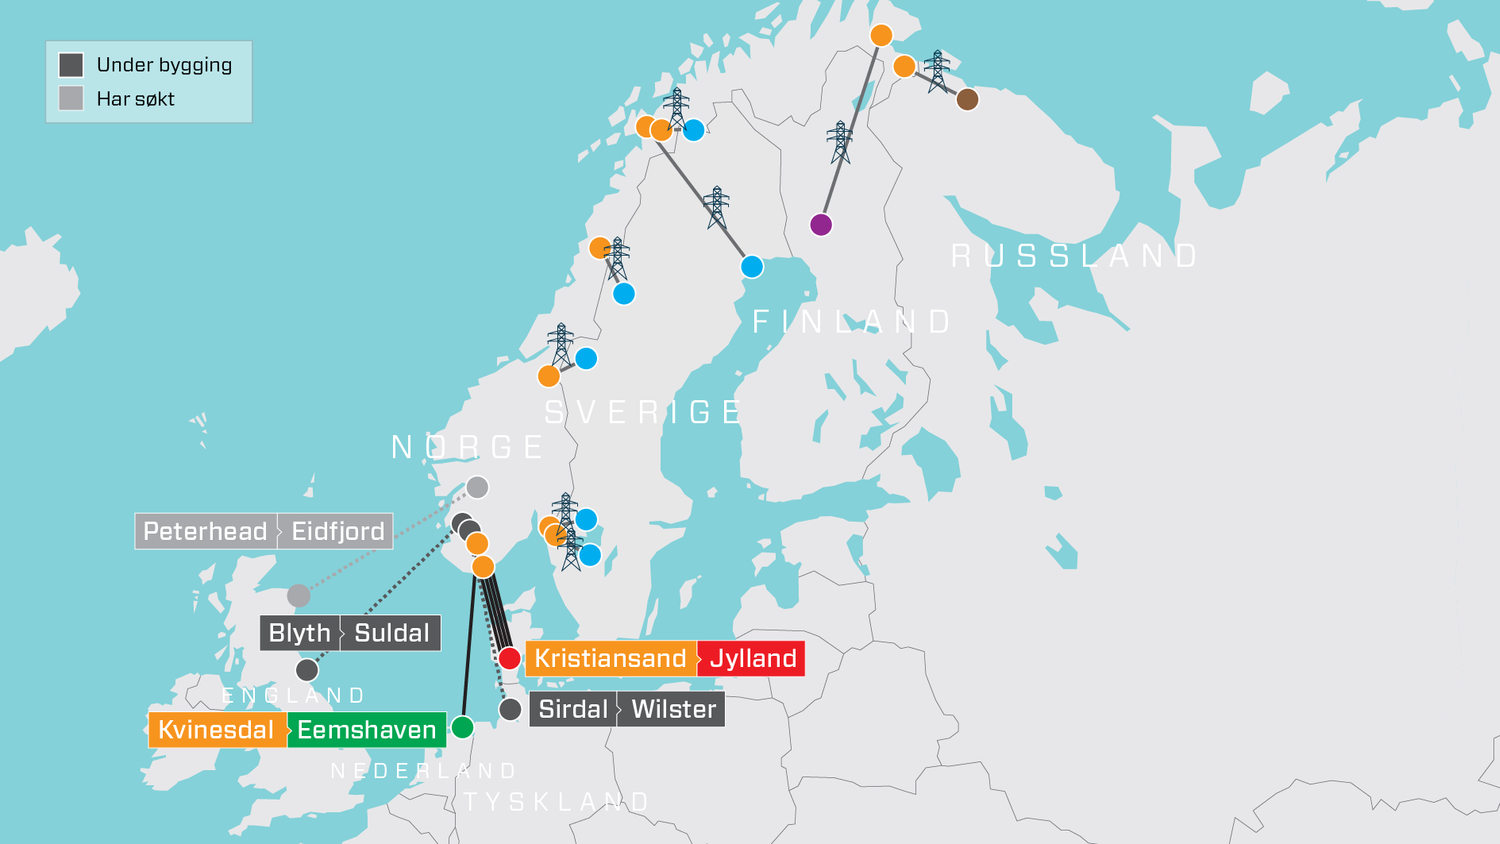 Схема подводных кабелей из Норвегии. Все, кроме Peterhead-Eidfjord уже эксплуатируются